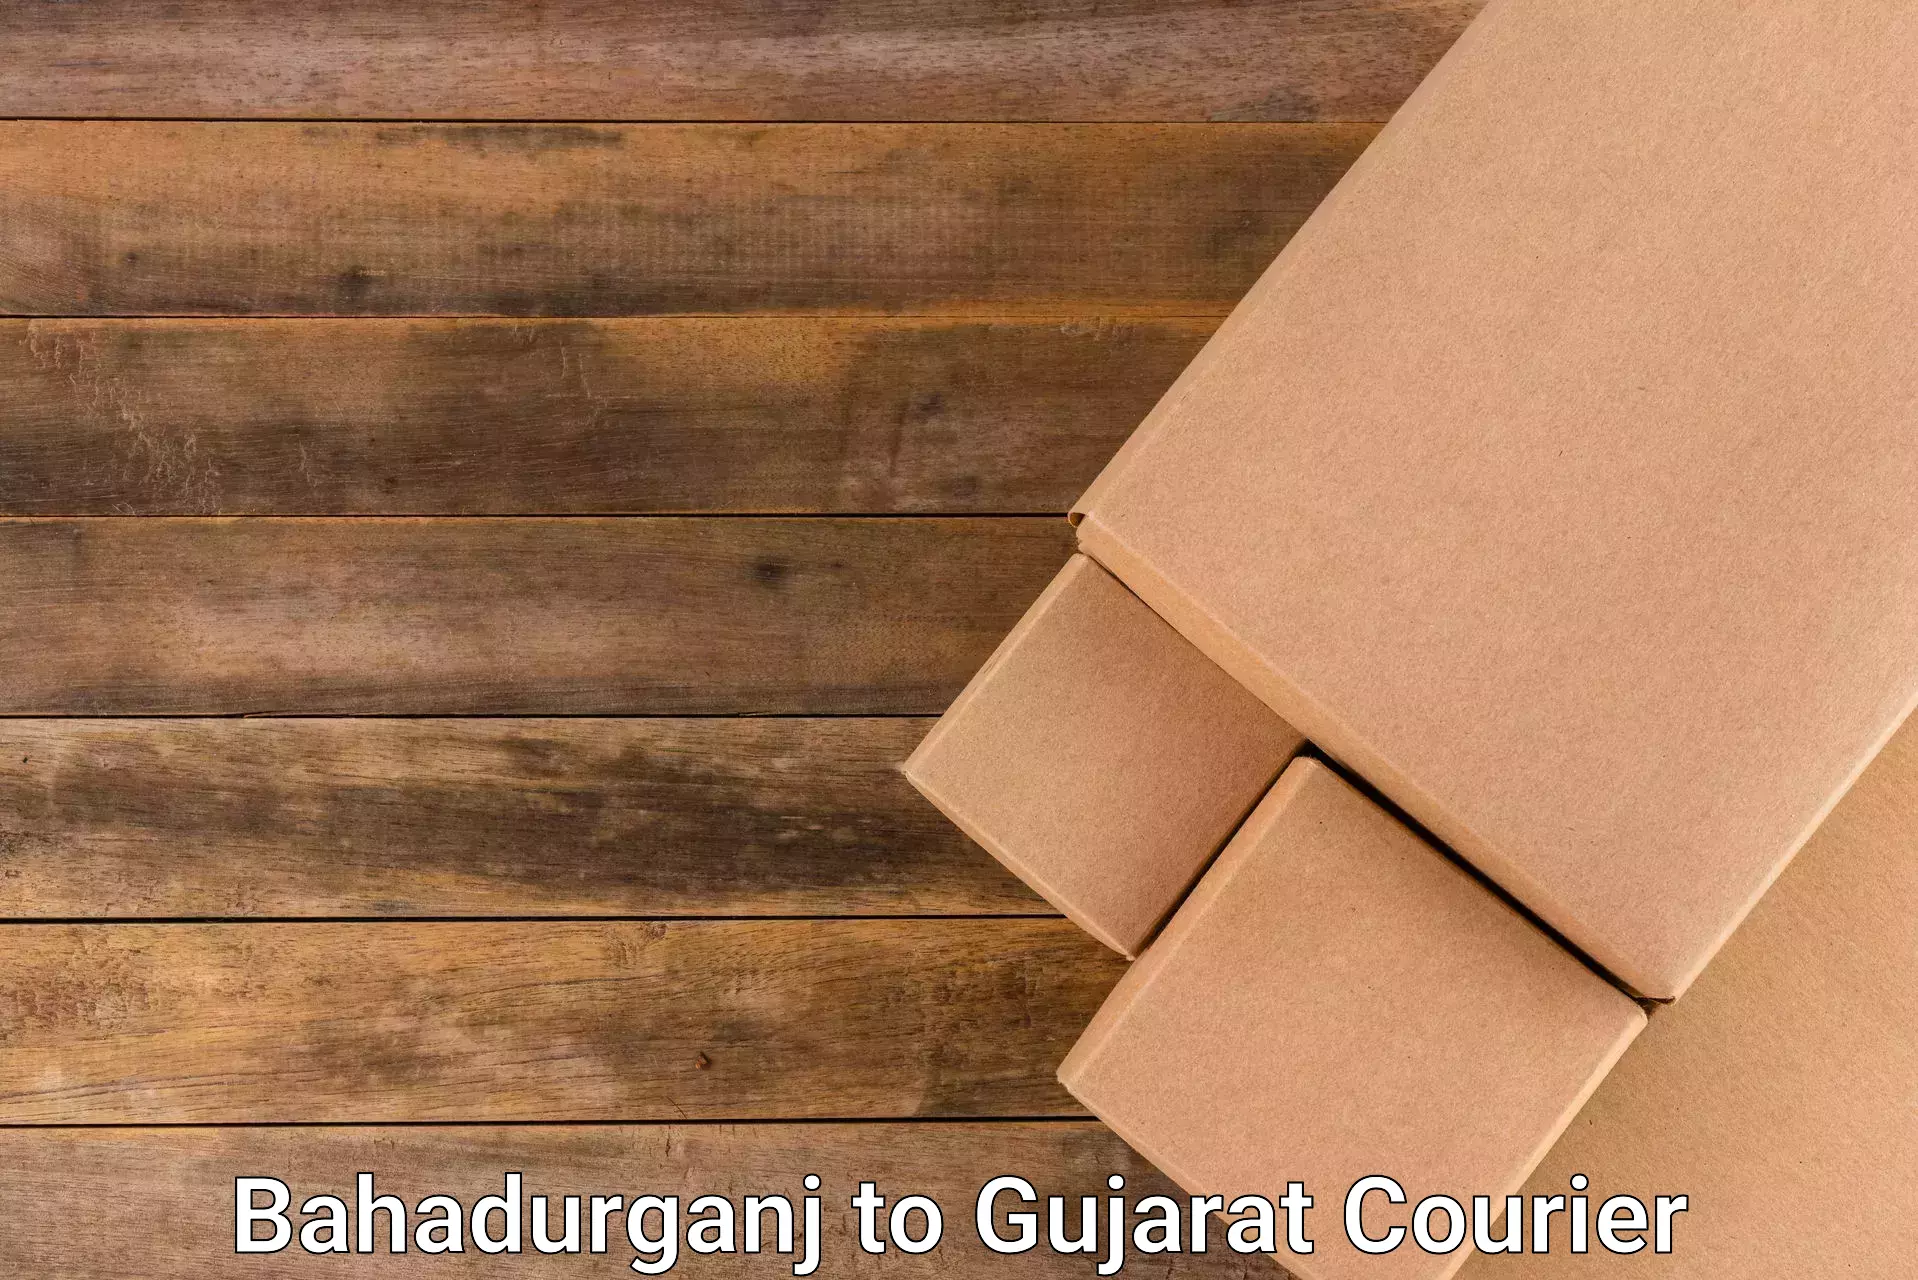 Cargo delivery service Bahadurganj to Gujarat